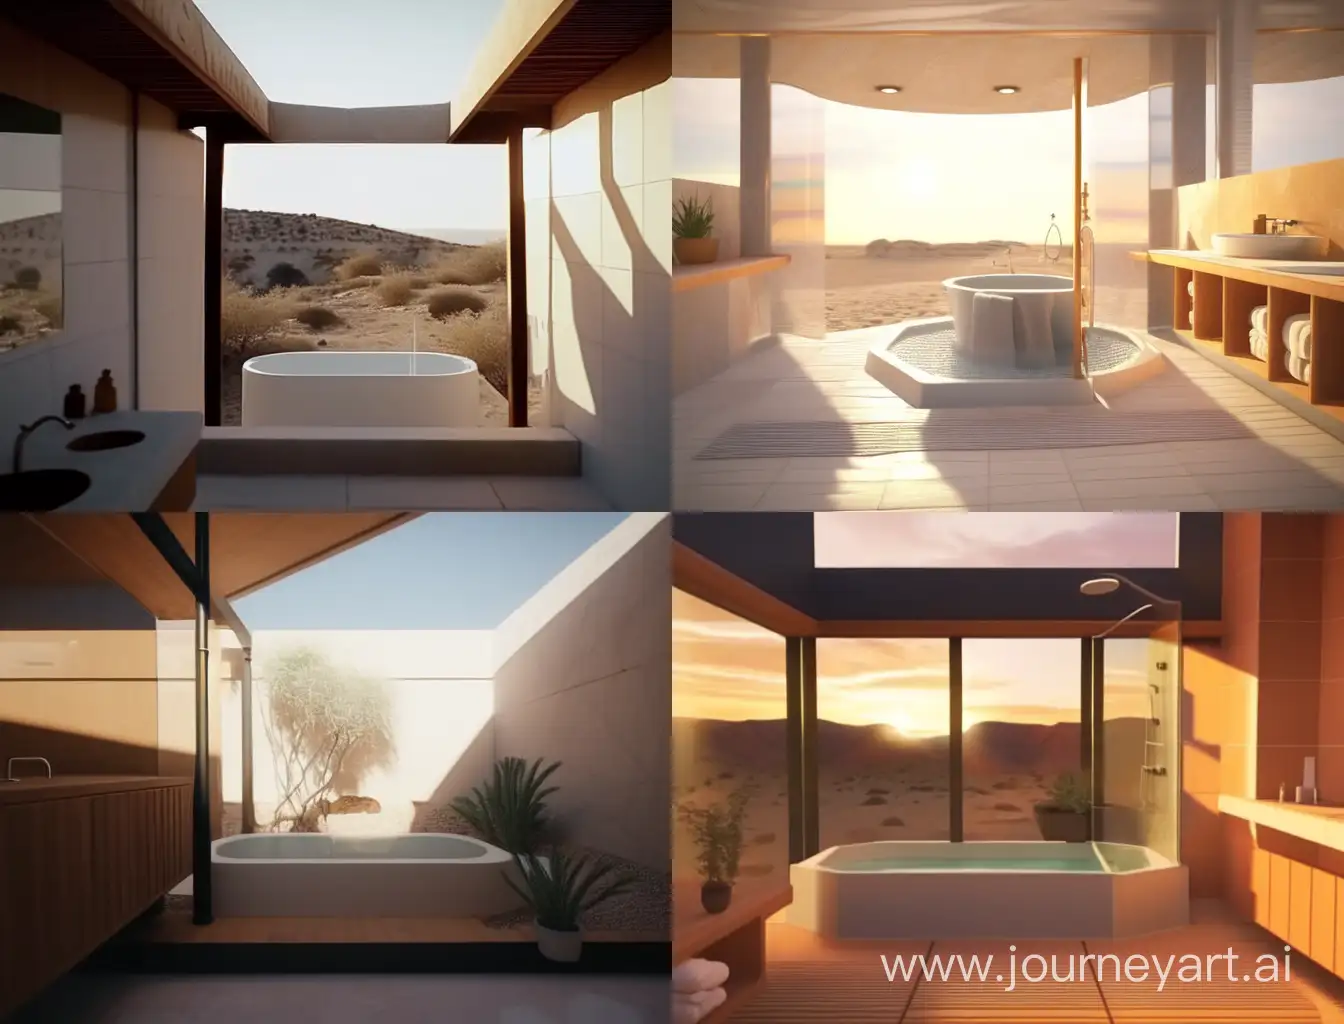 Desert-Oasis-Family-Enjoying-SunHeated-Shower-and-Bathtub-in-30SquareMeter-Design